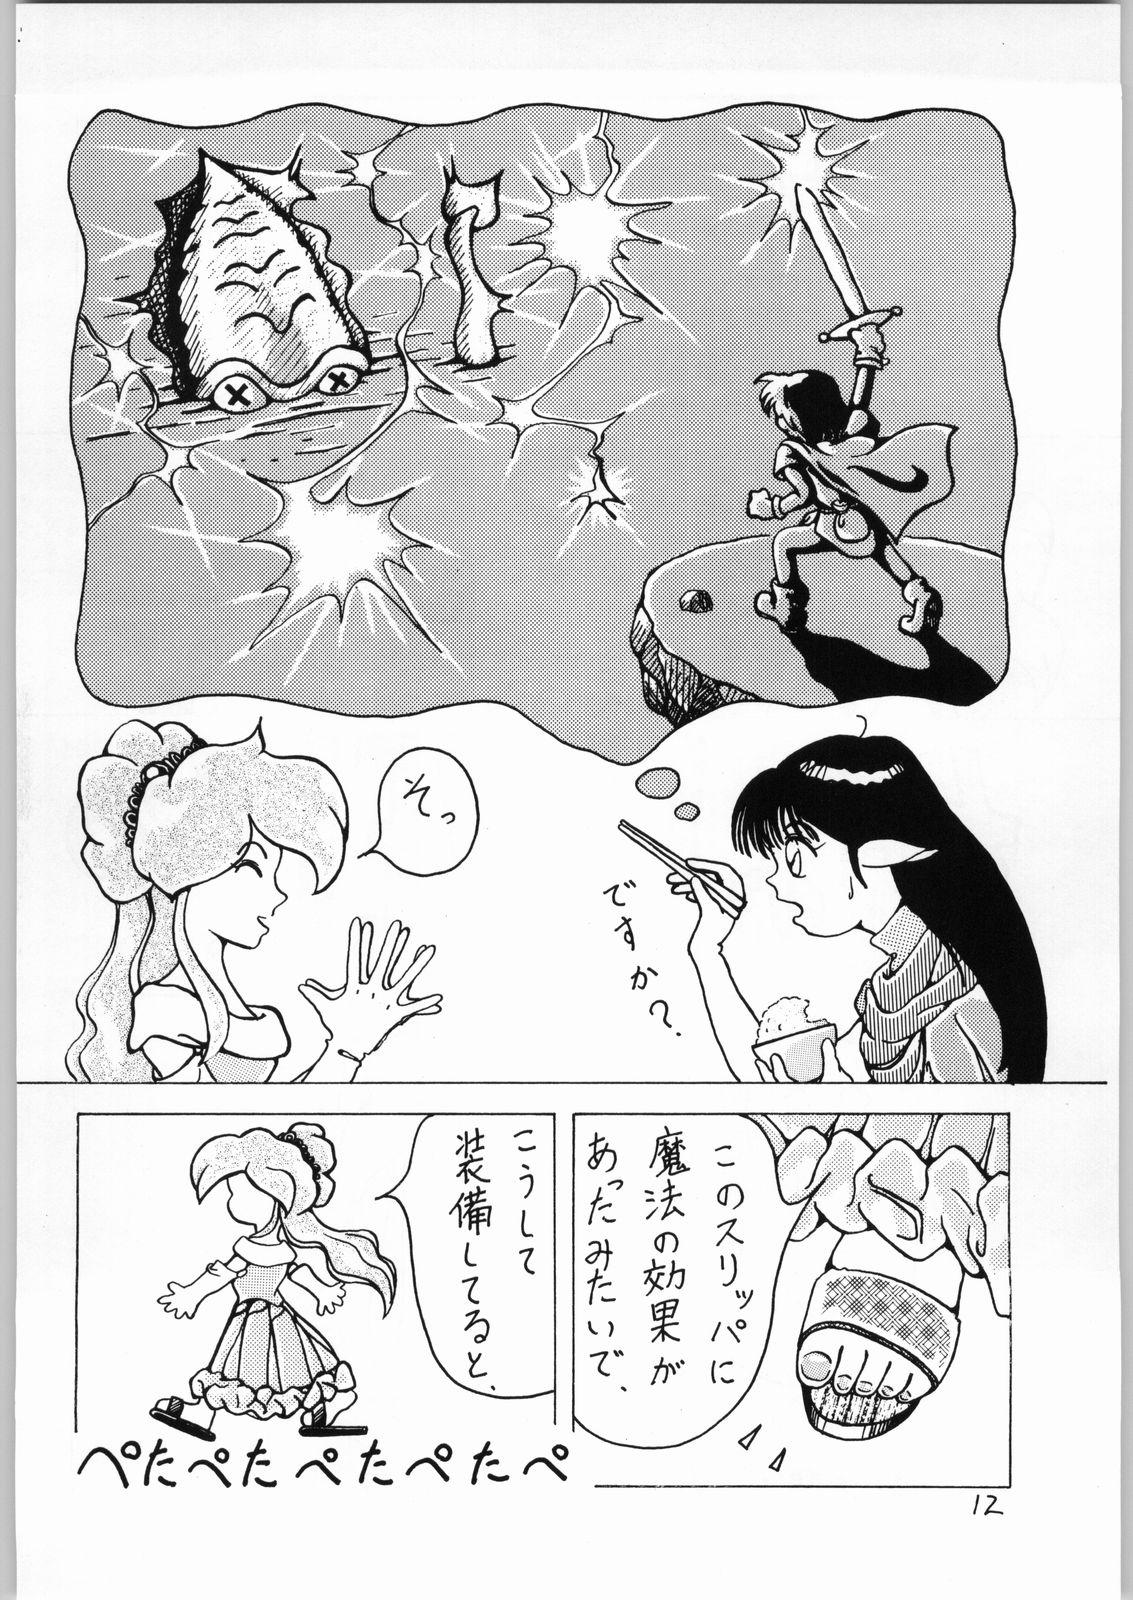 Roughsex Dance of Princess 3 - Sailor moon Tenchi muyo Akazukin cha cha Minky momo Ng knight lamune and 40 Porno - Page 11